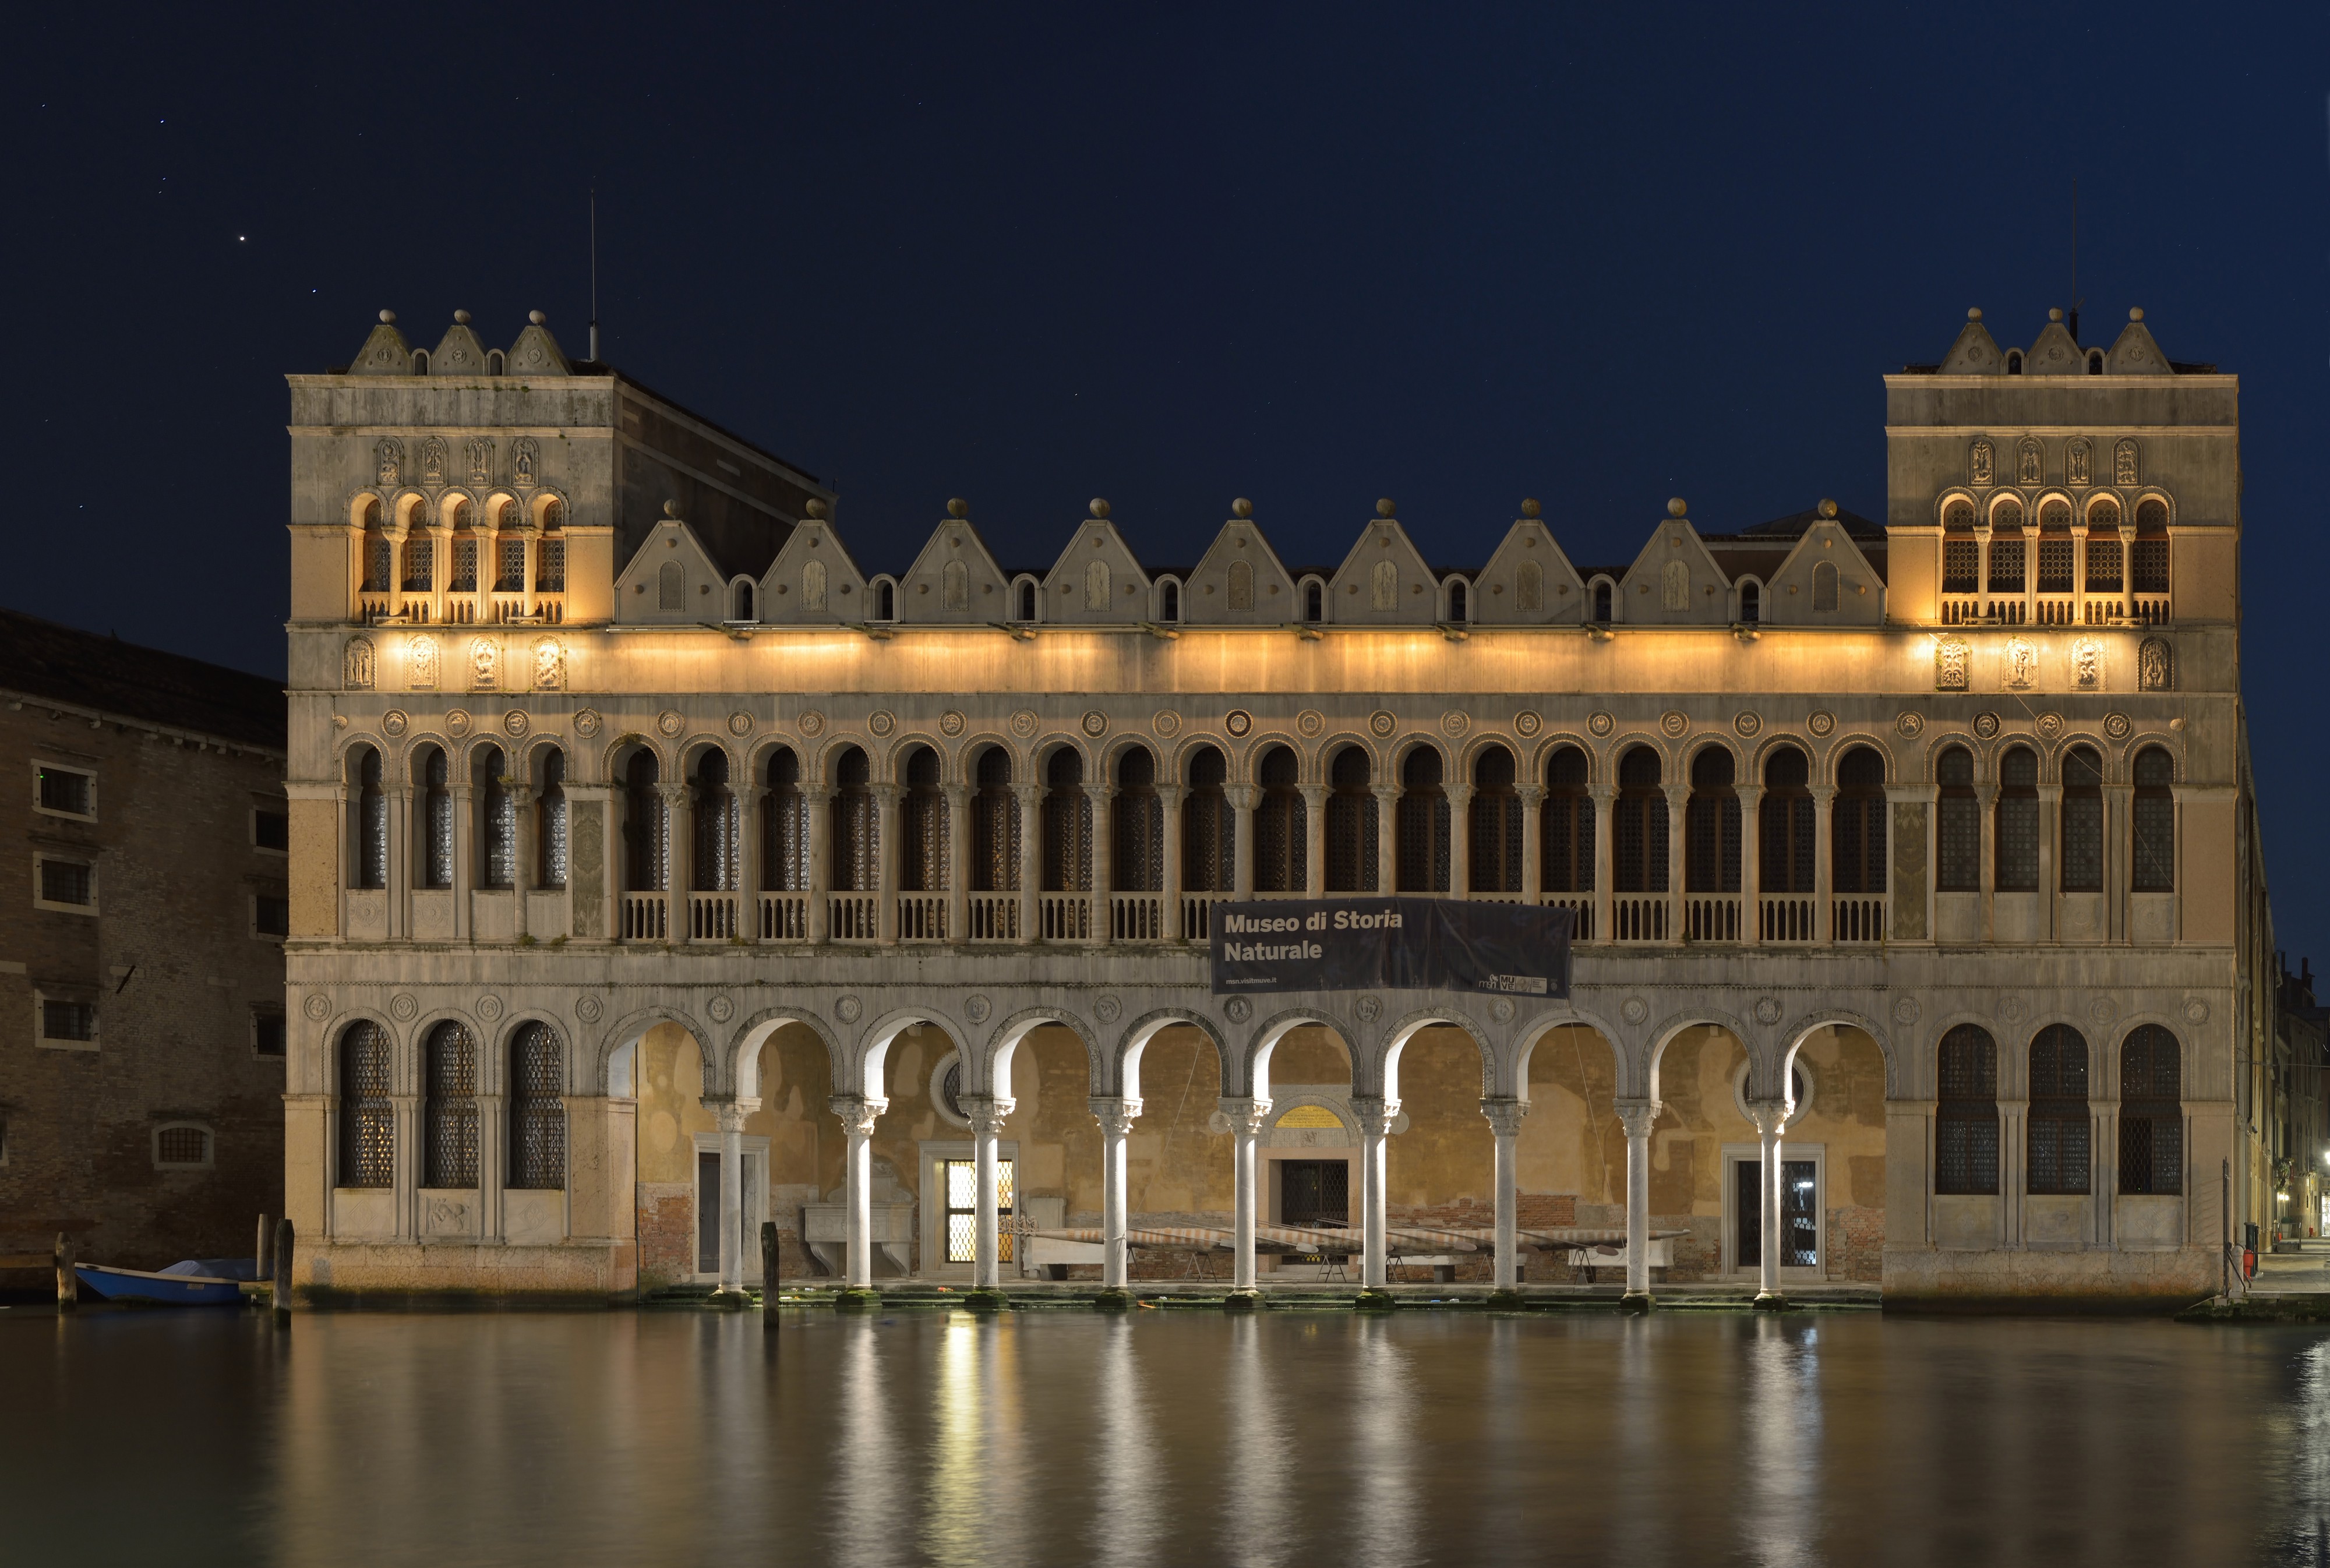 Fondaco dei Turchi e Museo di Storia naturale Venezia notte